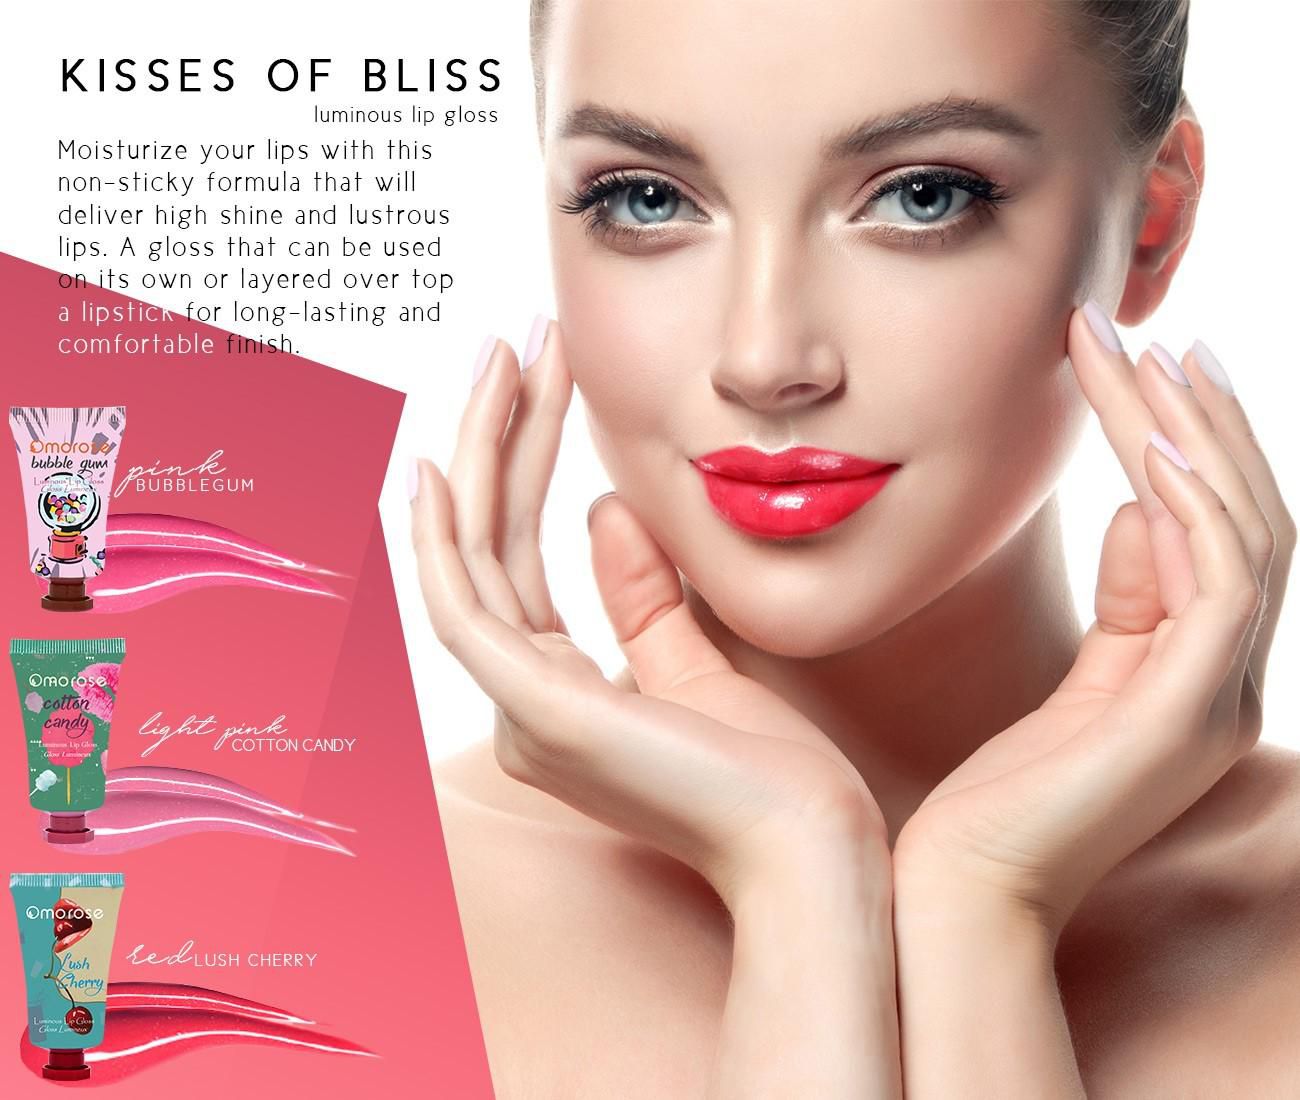 Omorose Kisses Of Bliss - Set Of 3 Lip Glosses